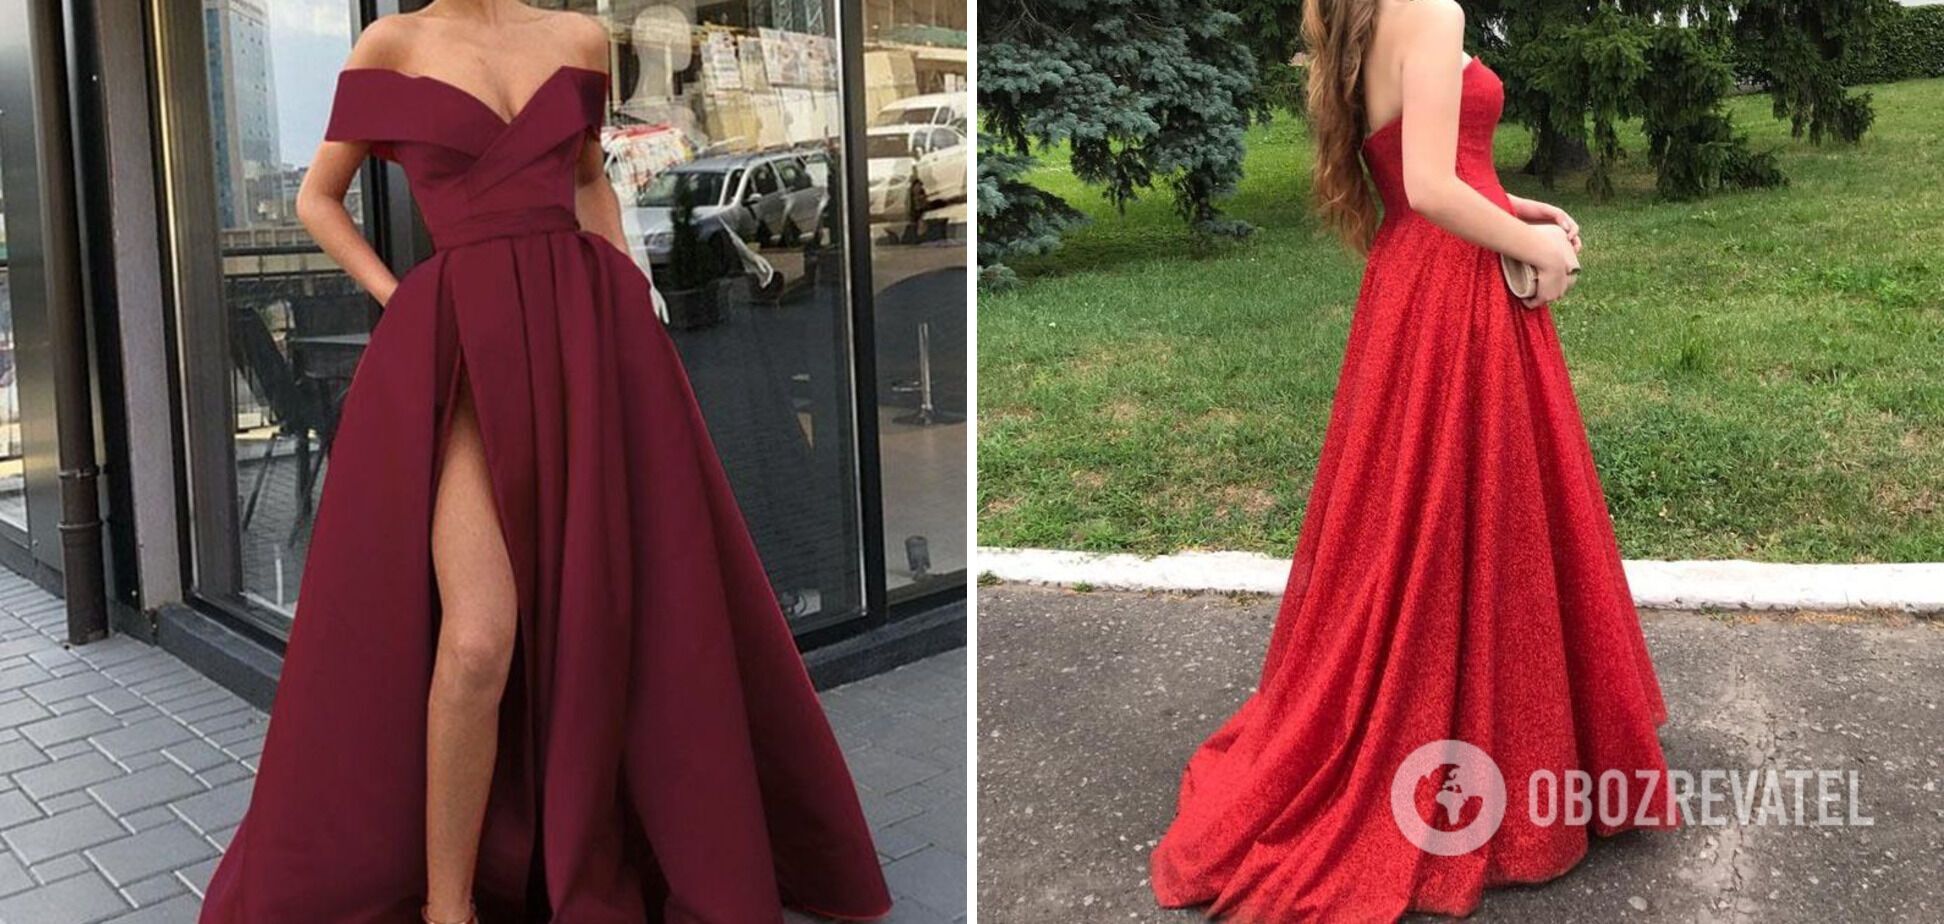 Червоний і бордовий колір сукні виглядає неперевершено